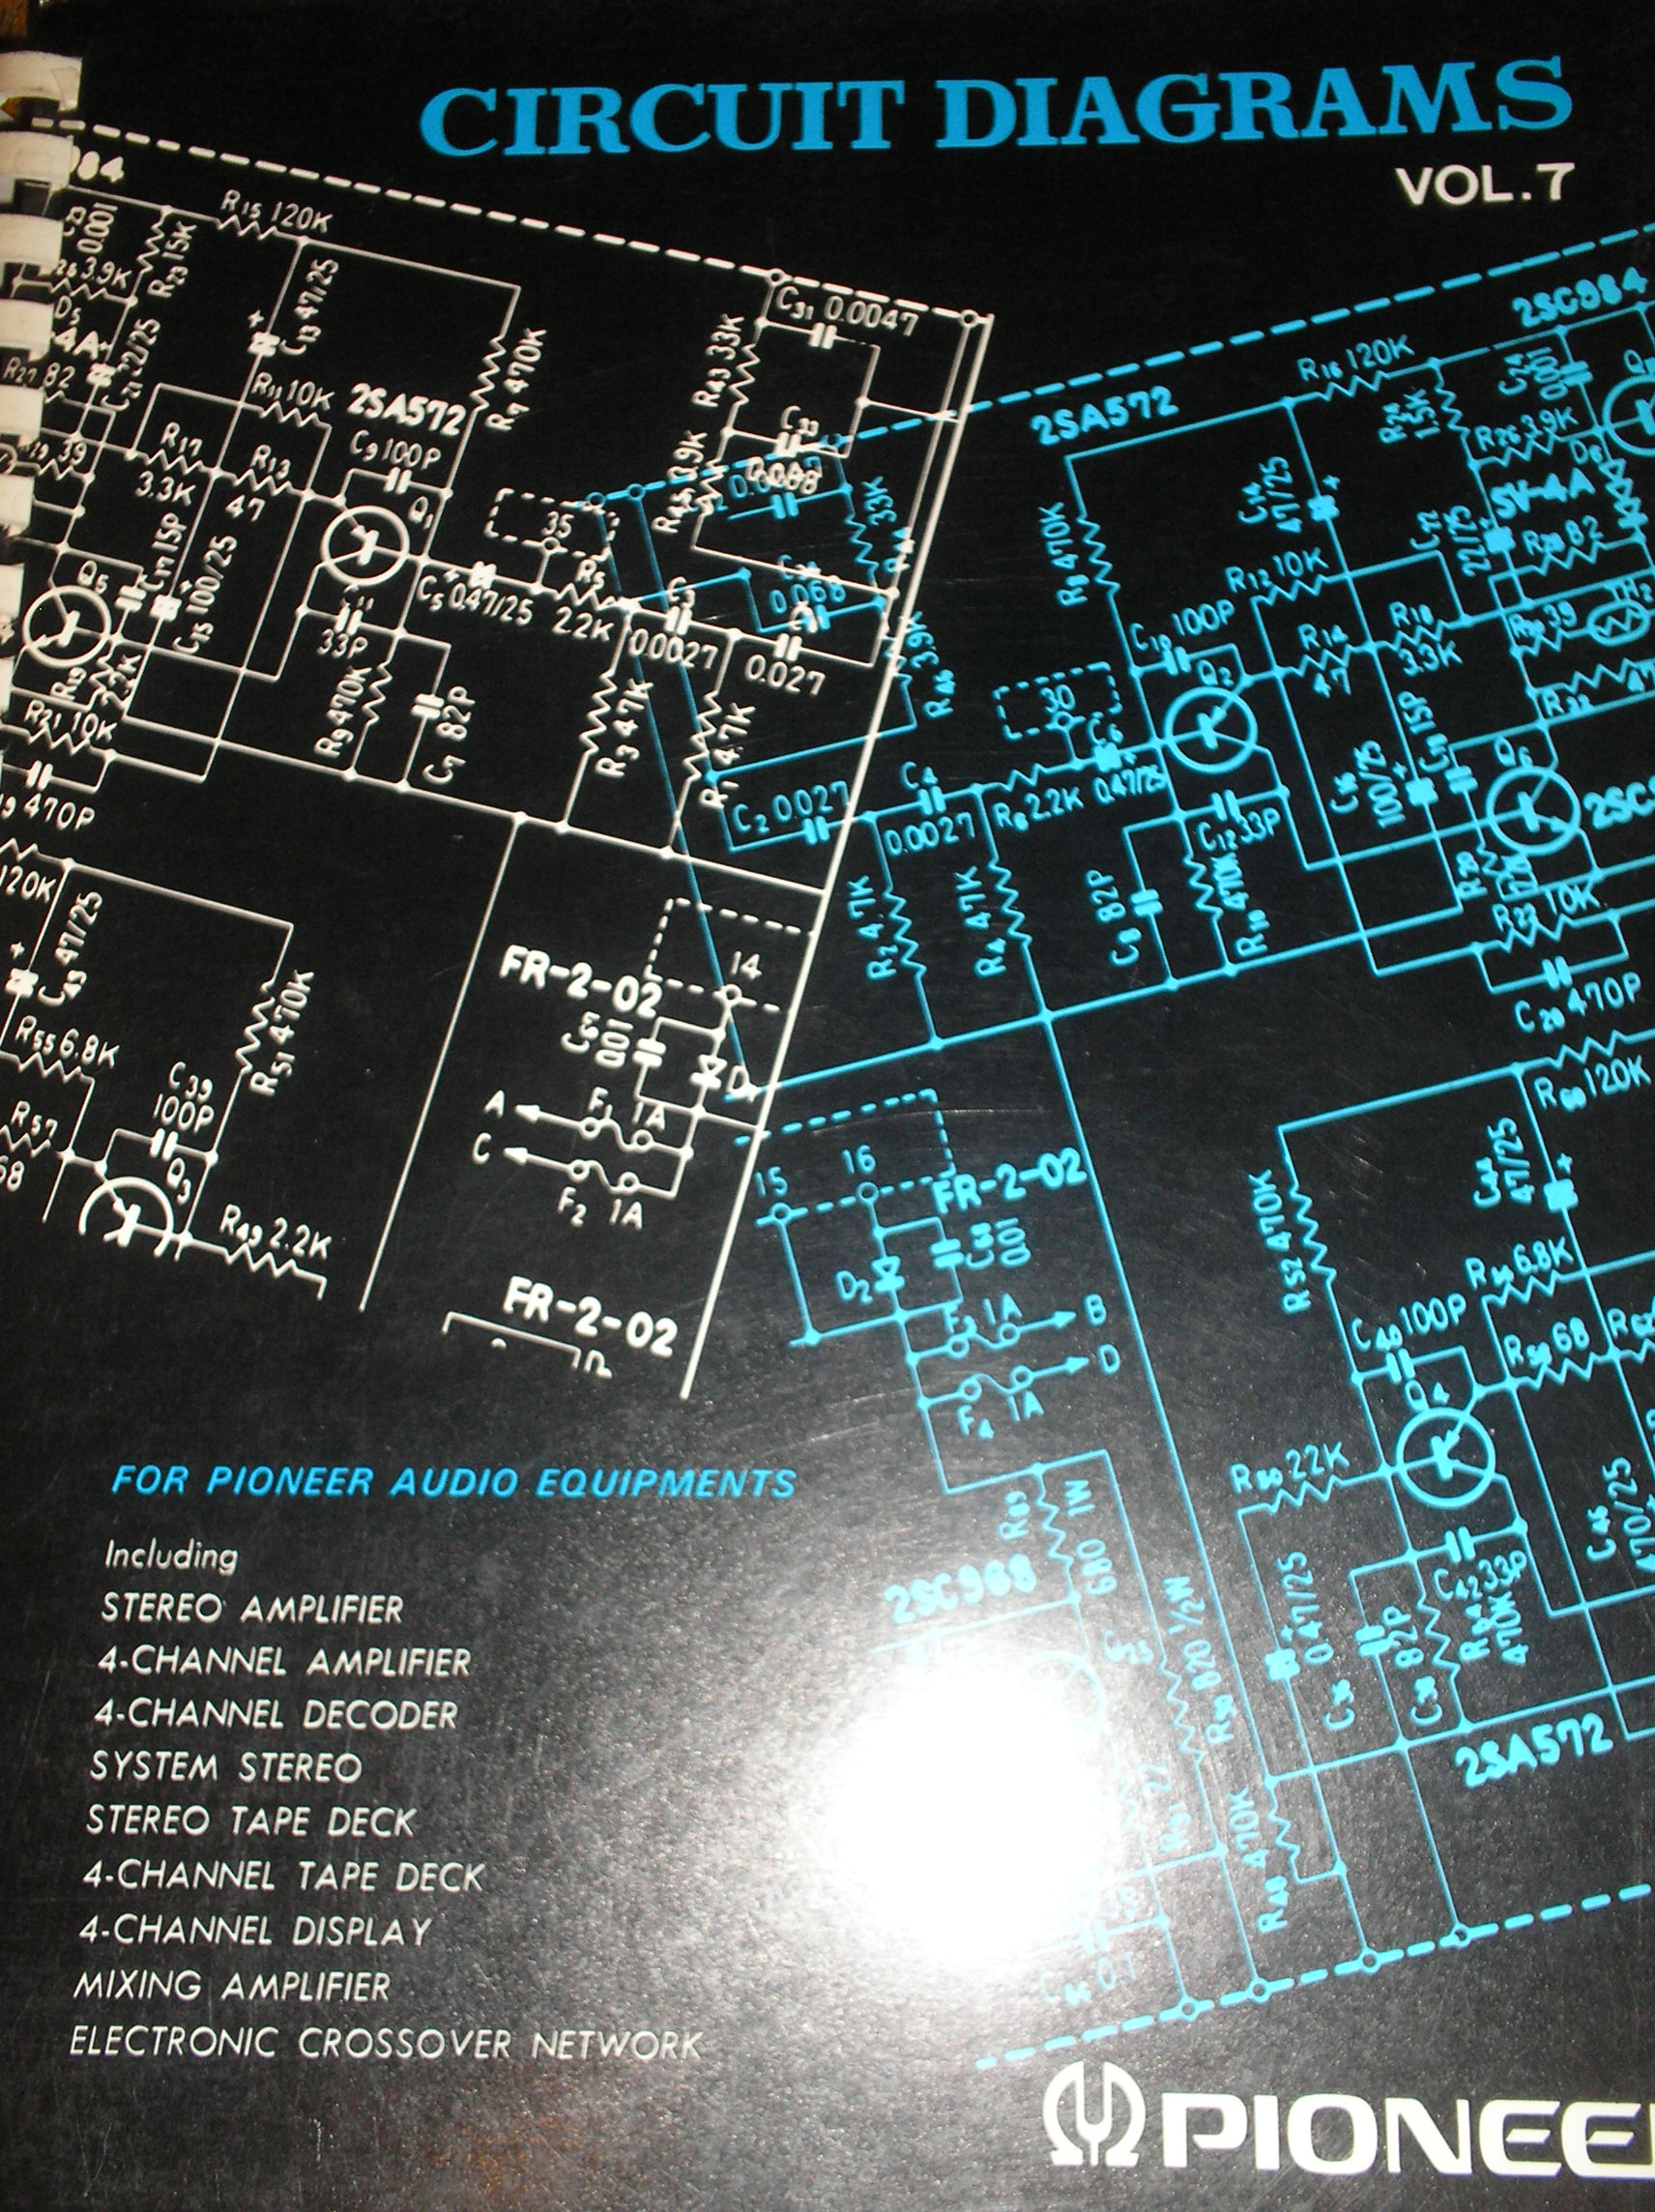 CT-4141A Cassette Deck fold out schematics.   Book 7